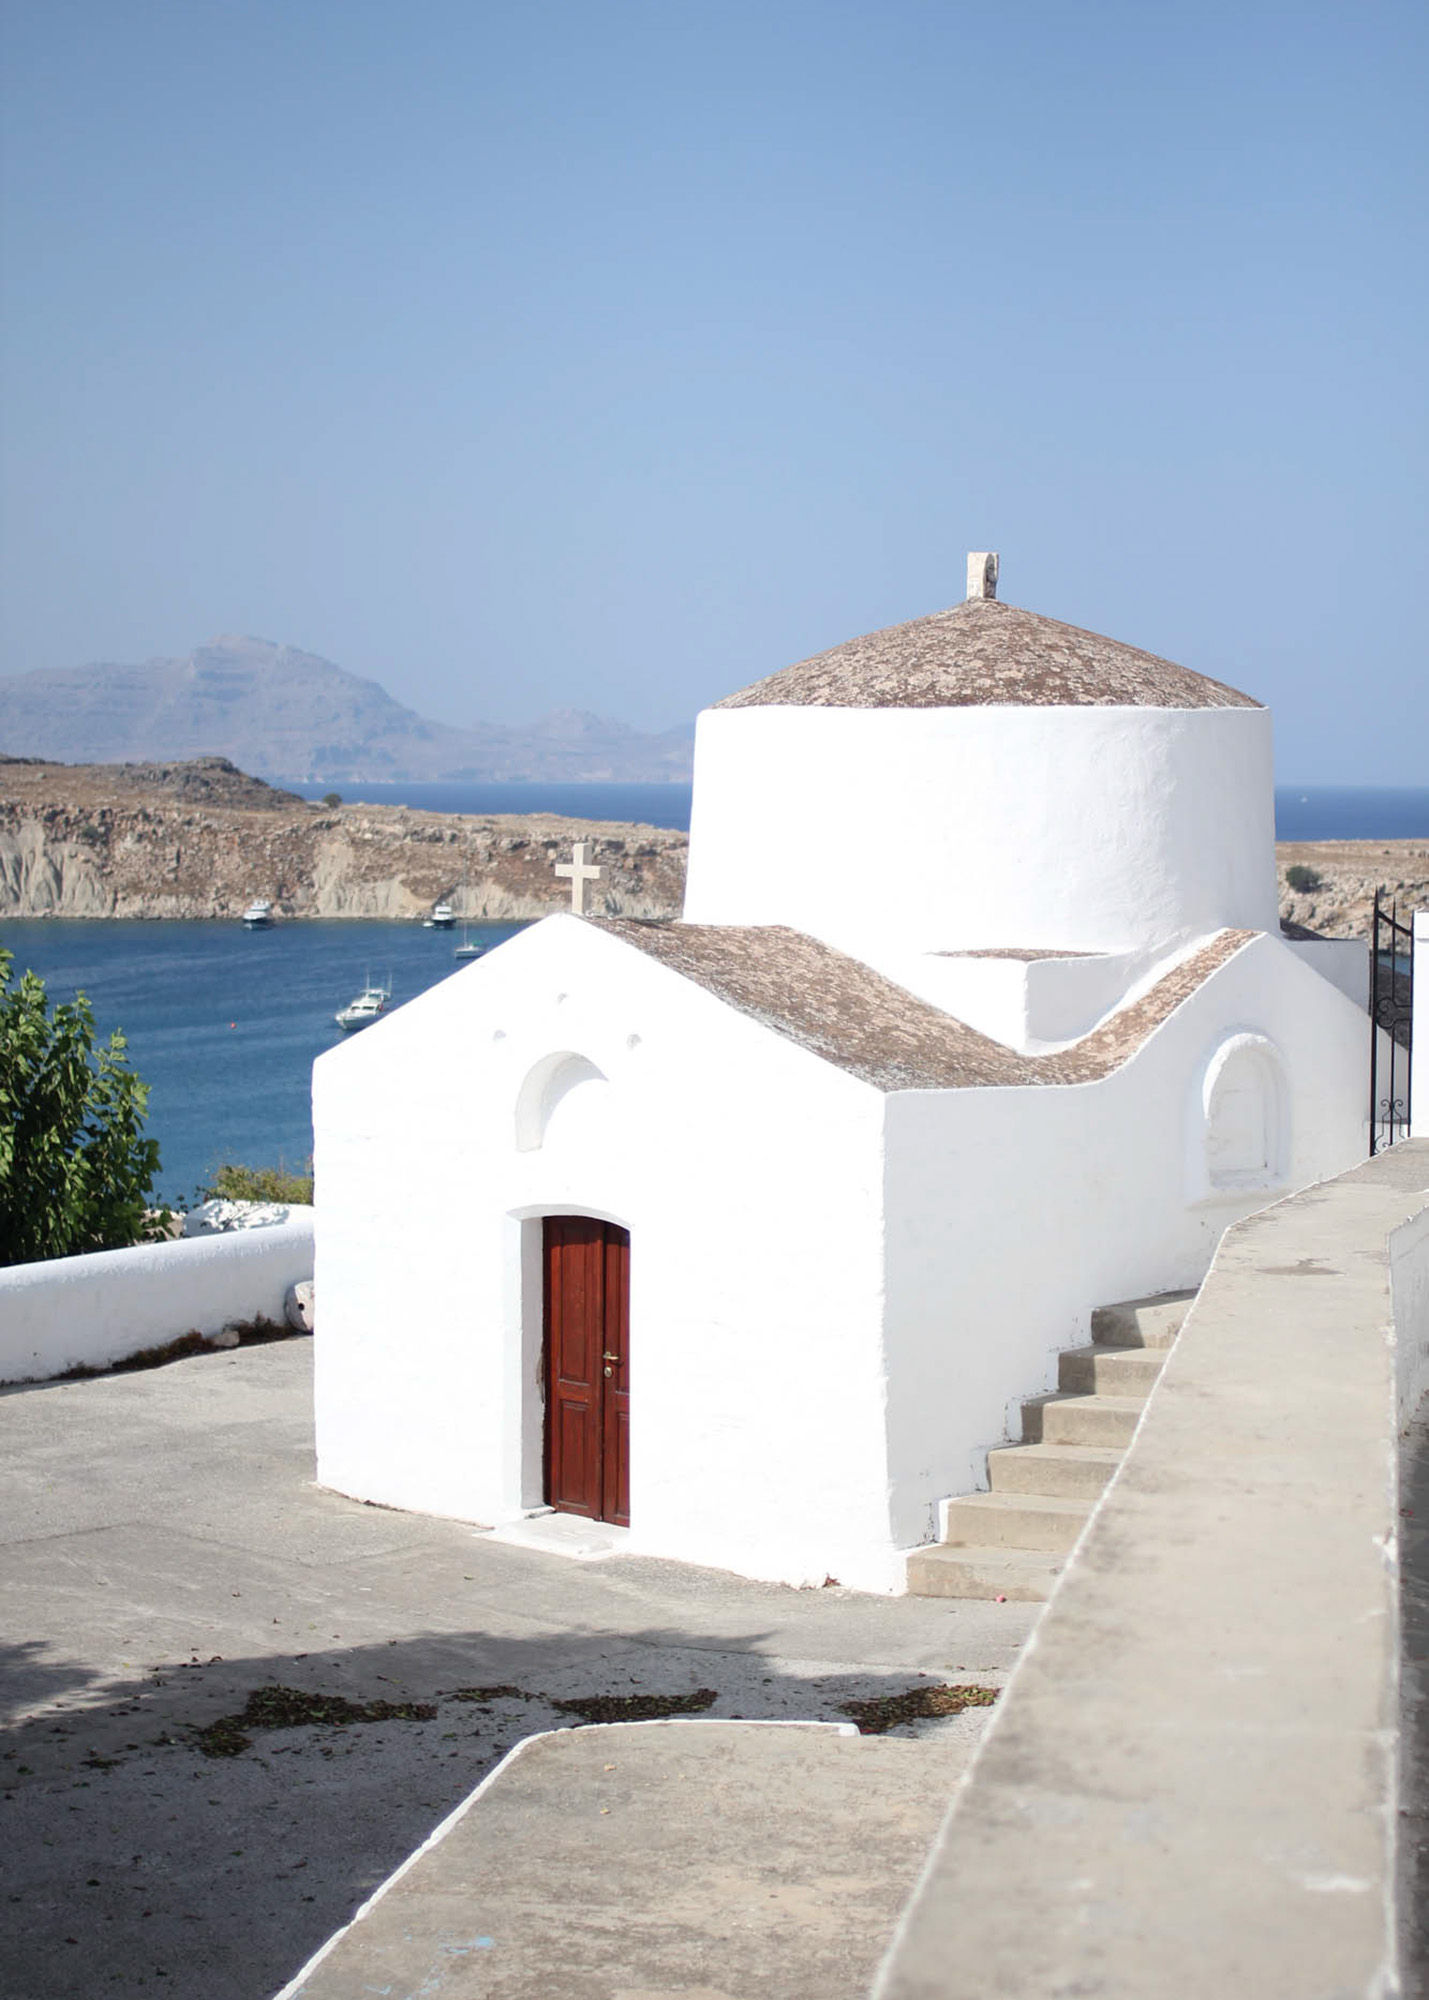 kapliczka w mieście lindos, biała cerkiew w widokiem na morze